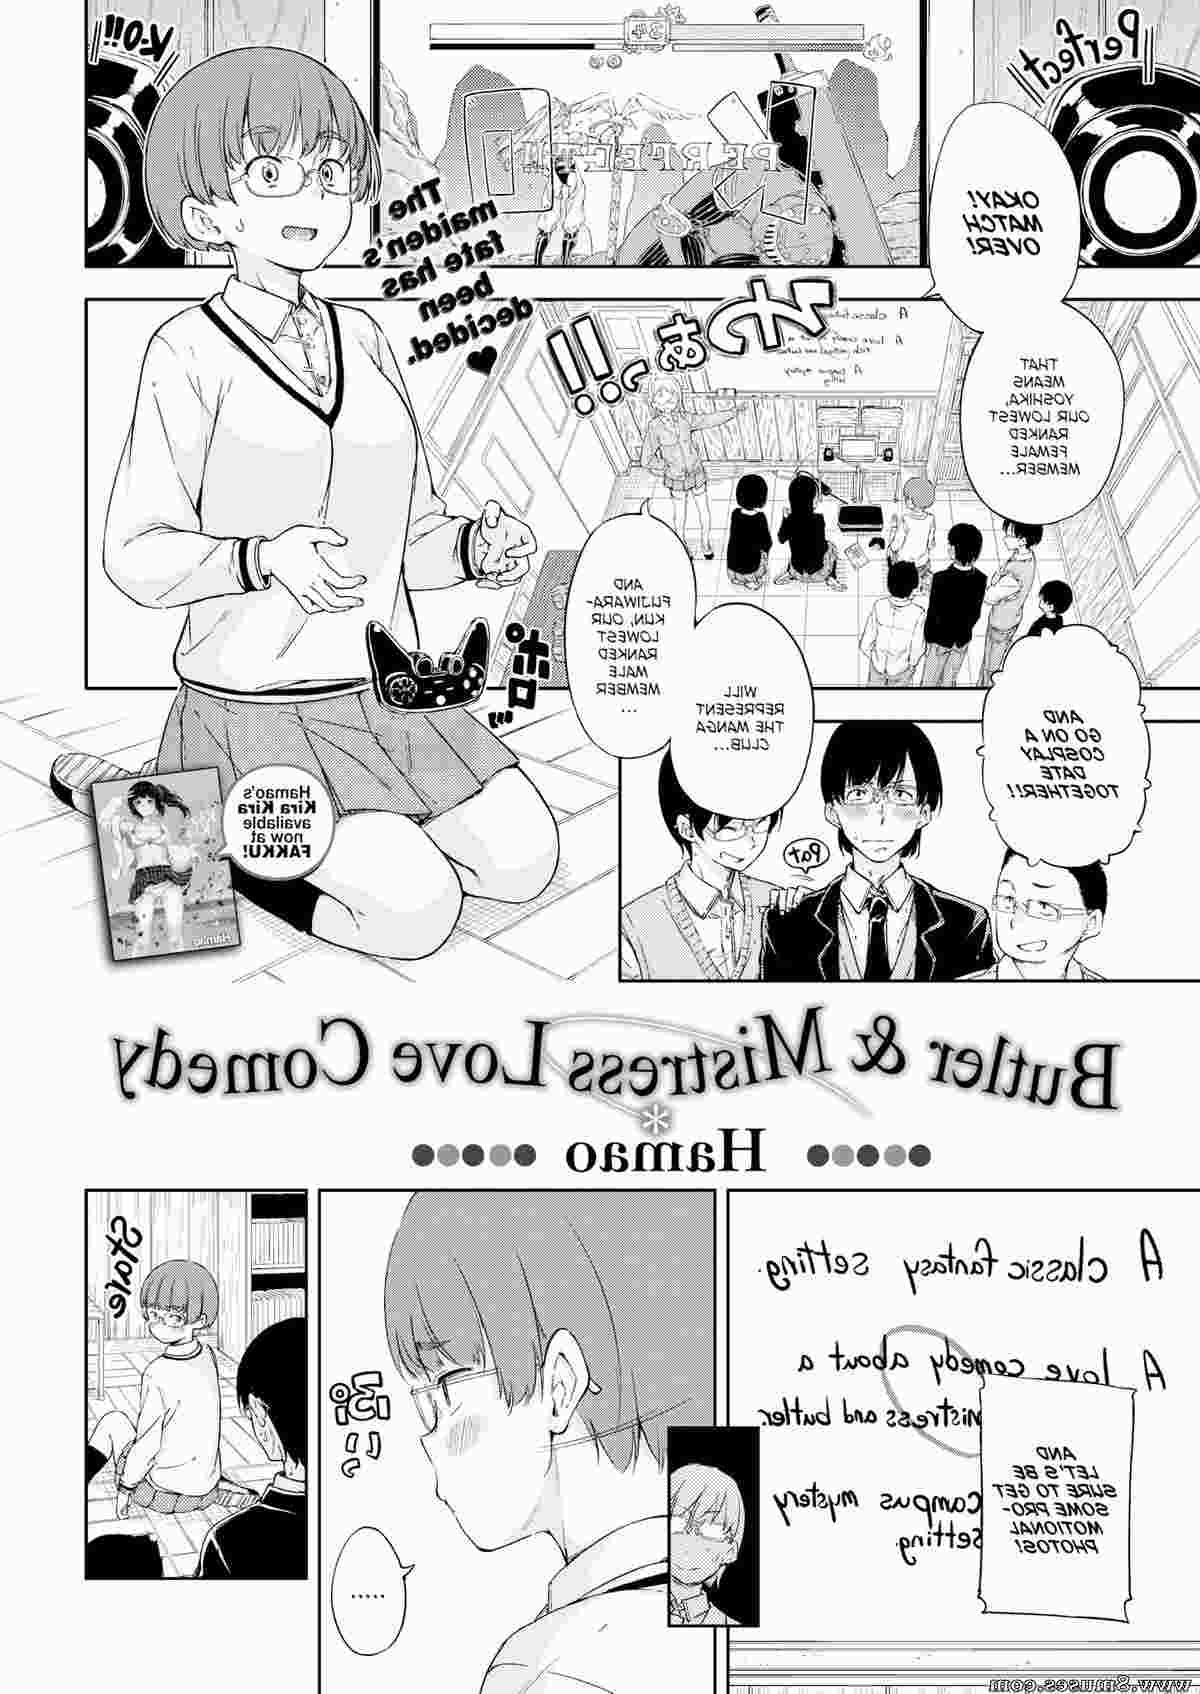 Fakku-Comics/Hamao Hamao__8muses_-_Sex_and_Porn_Comics.jpg